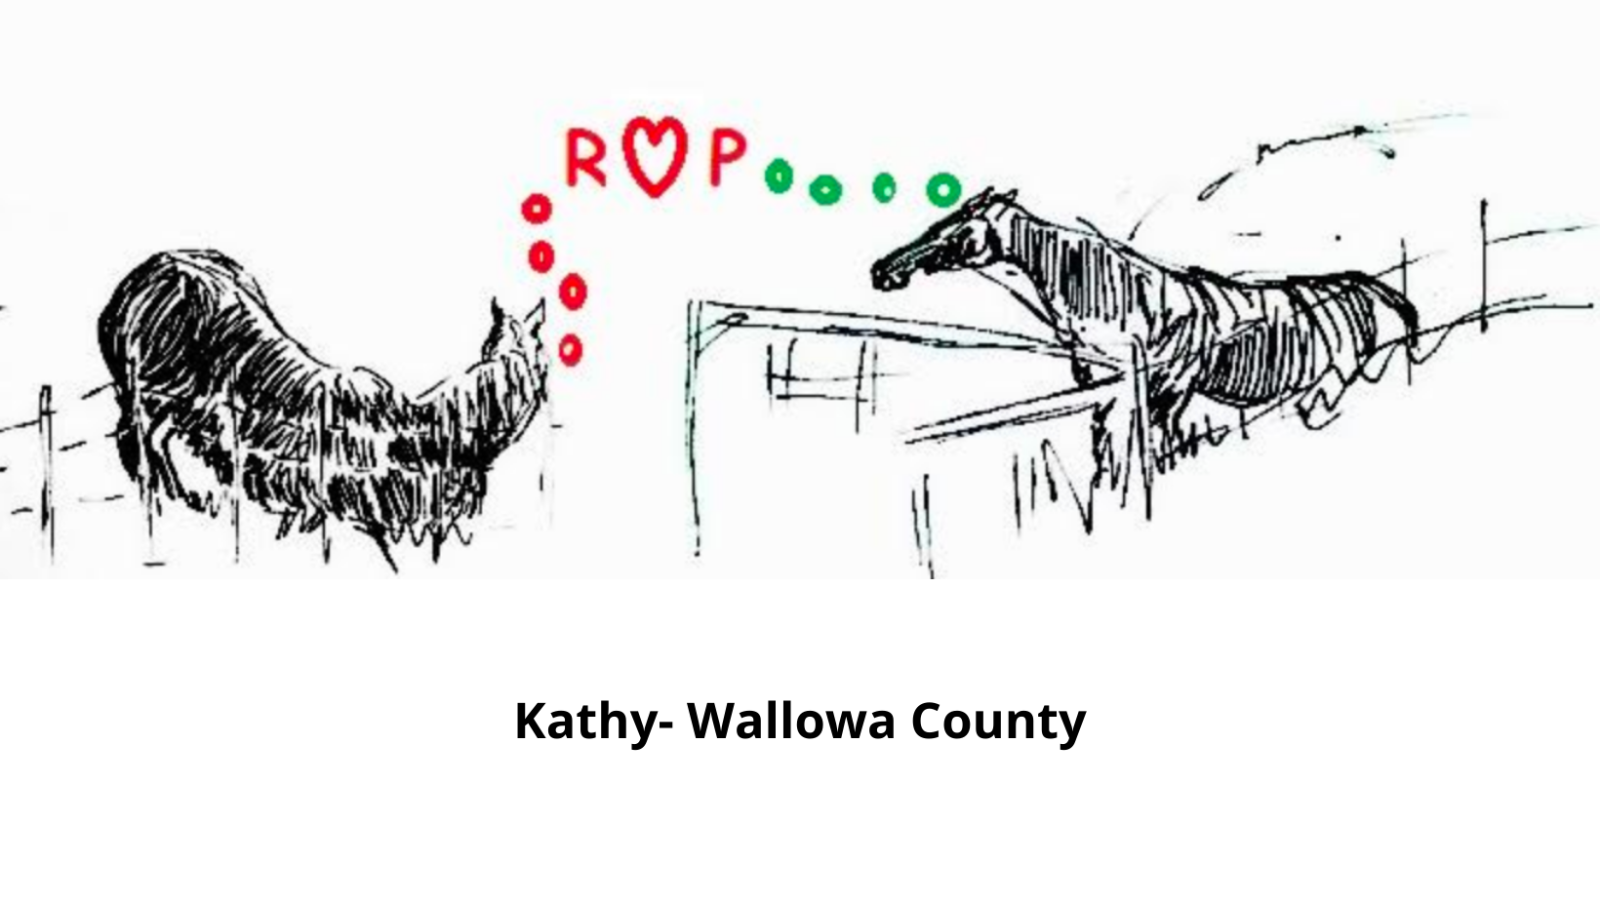 来自瓦洛瓦县凯西的两匹马的图画，带有字母 ROP，其中“O”是一个心形